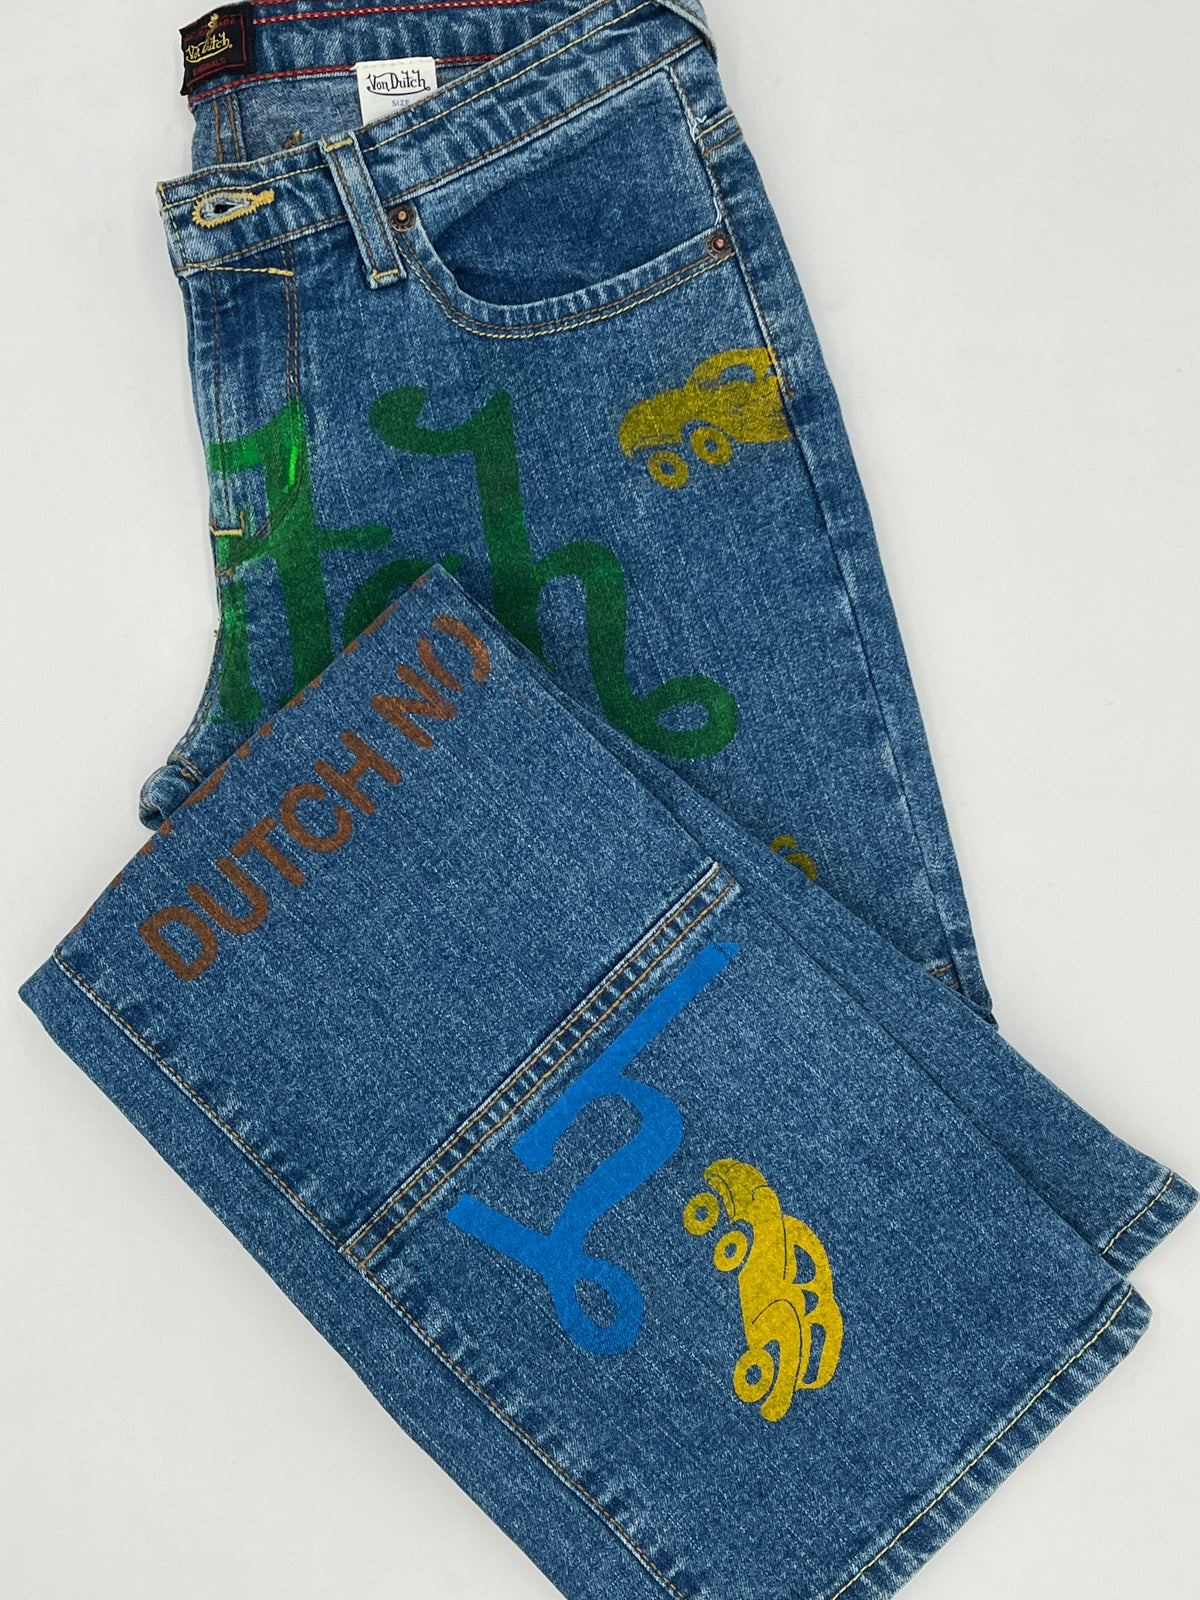 Von Dutch Vintage Jeans